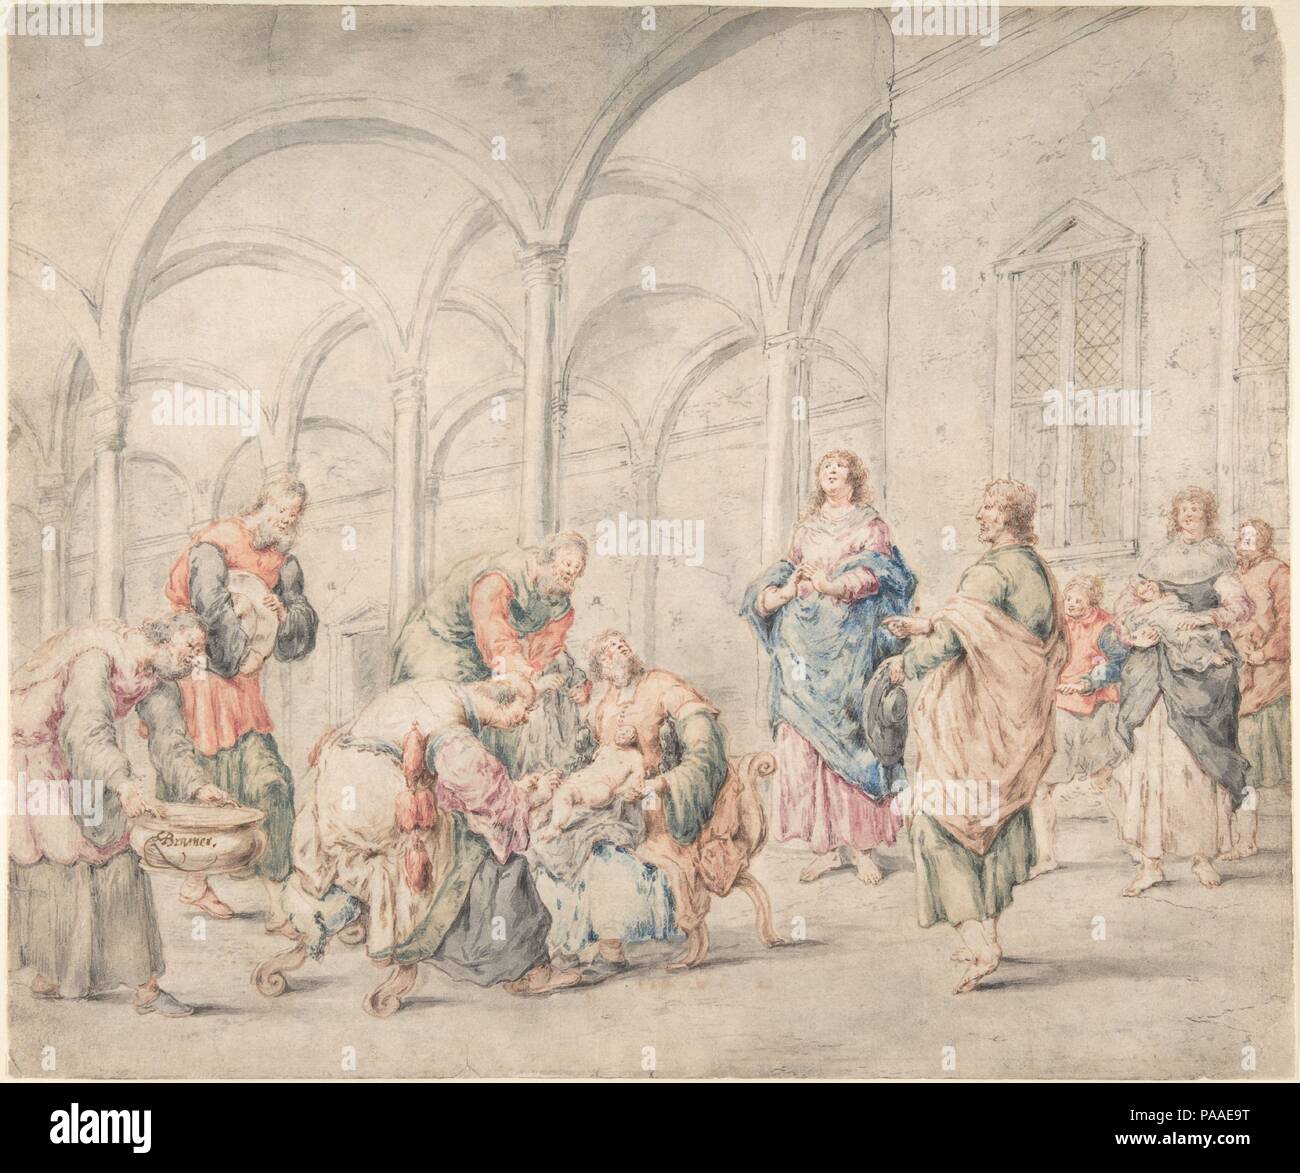 Die Beschneidung. Artist: leonaert Bramer (Niederländisch, Delft Delft 1596-1674). Abmessungen: 11 15/16 x 14 3/16 in. (30,3 x 36,1 cm). Datum: 1611-74. Museum: Metropolitan Museum of Art, New York, USA. Stockfoto